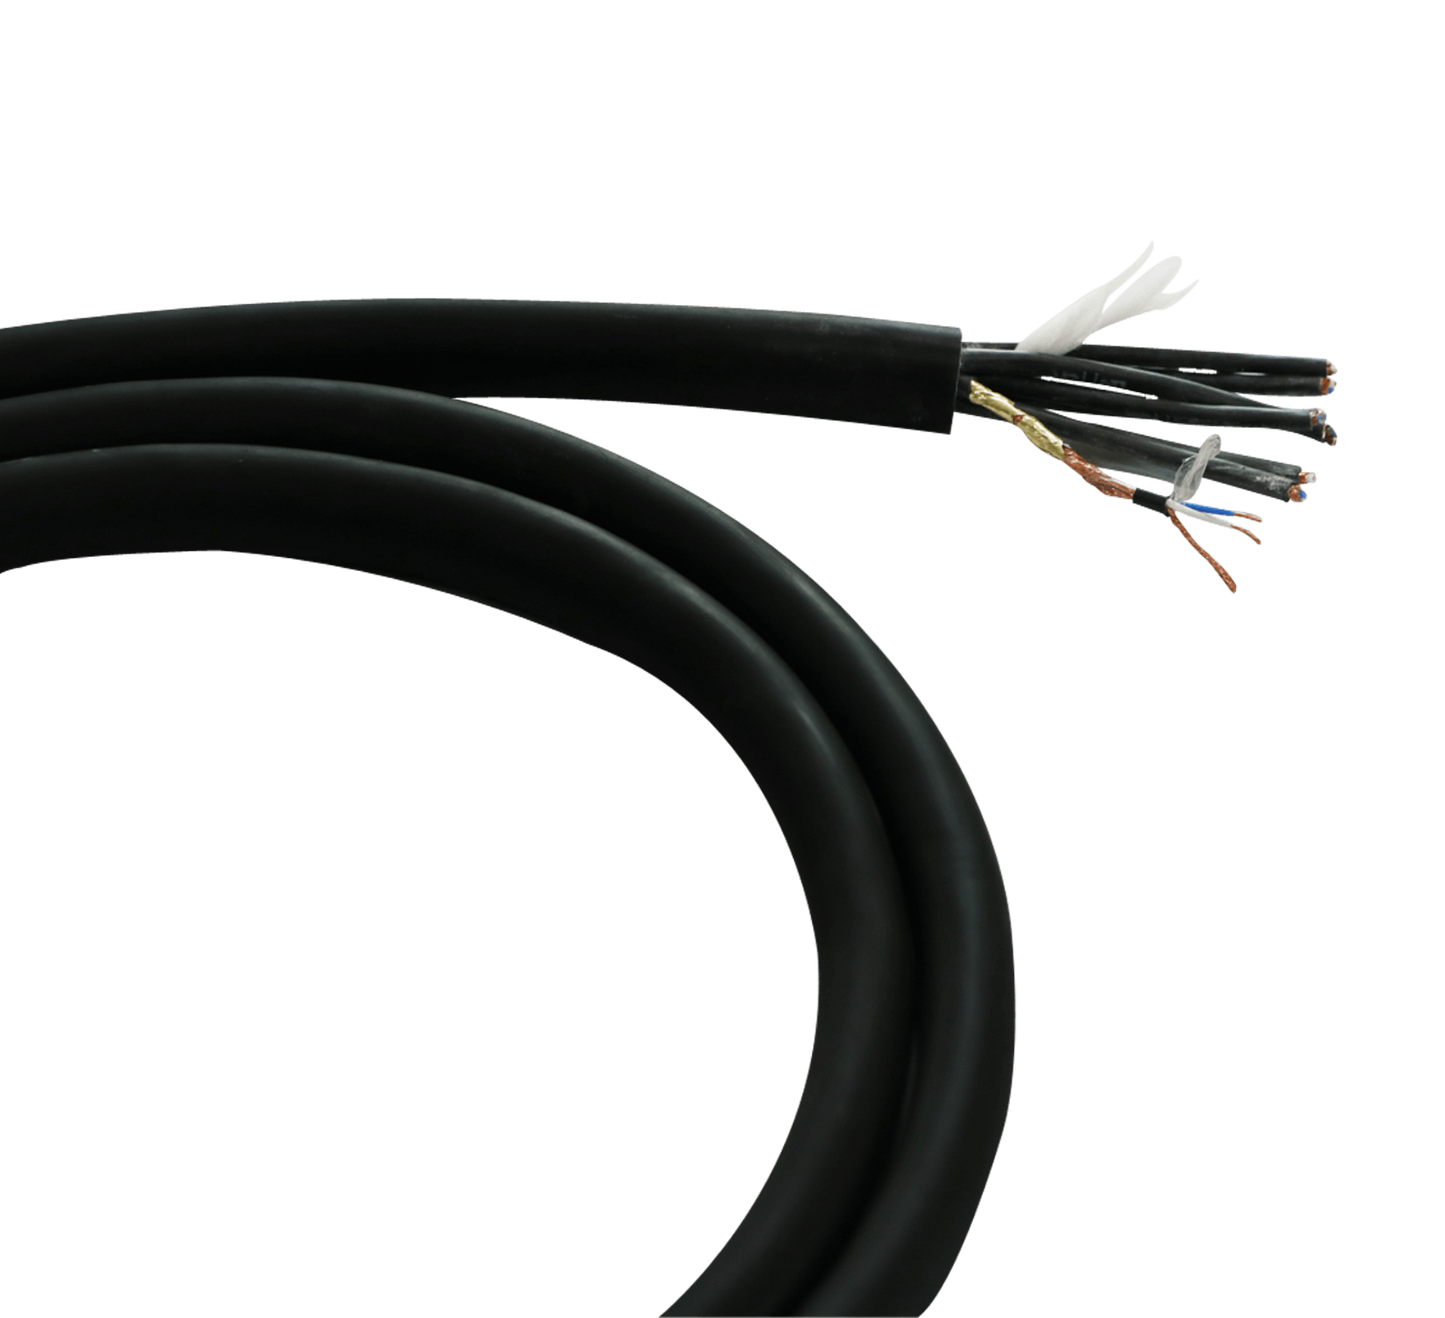 KRYSTALS 8 Pair Digital Snake Cable